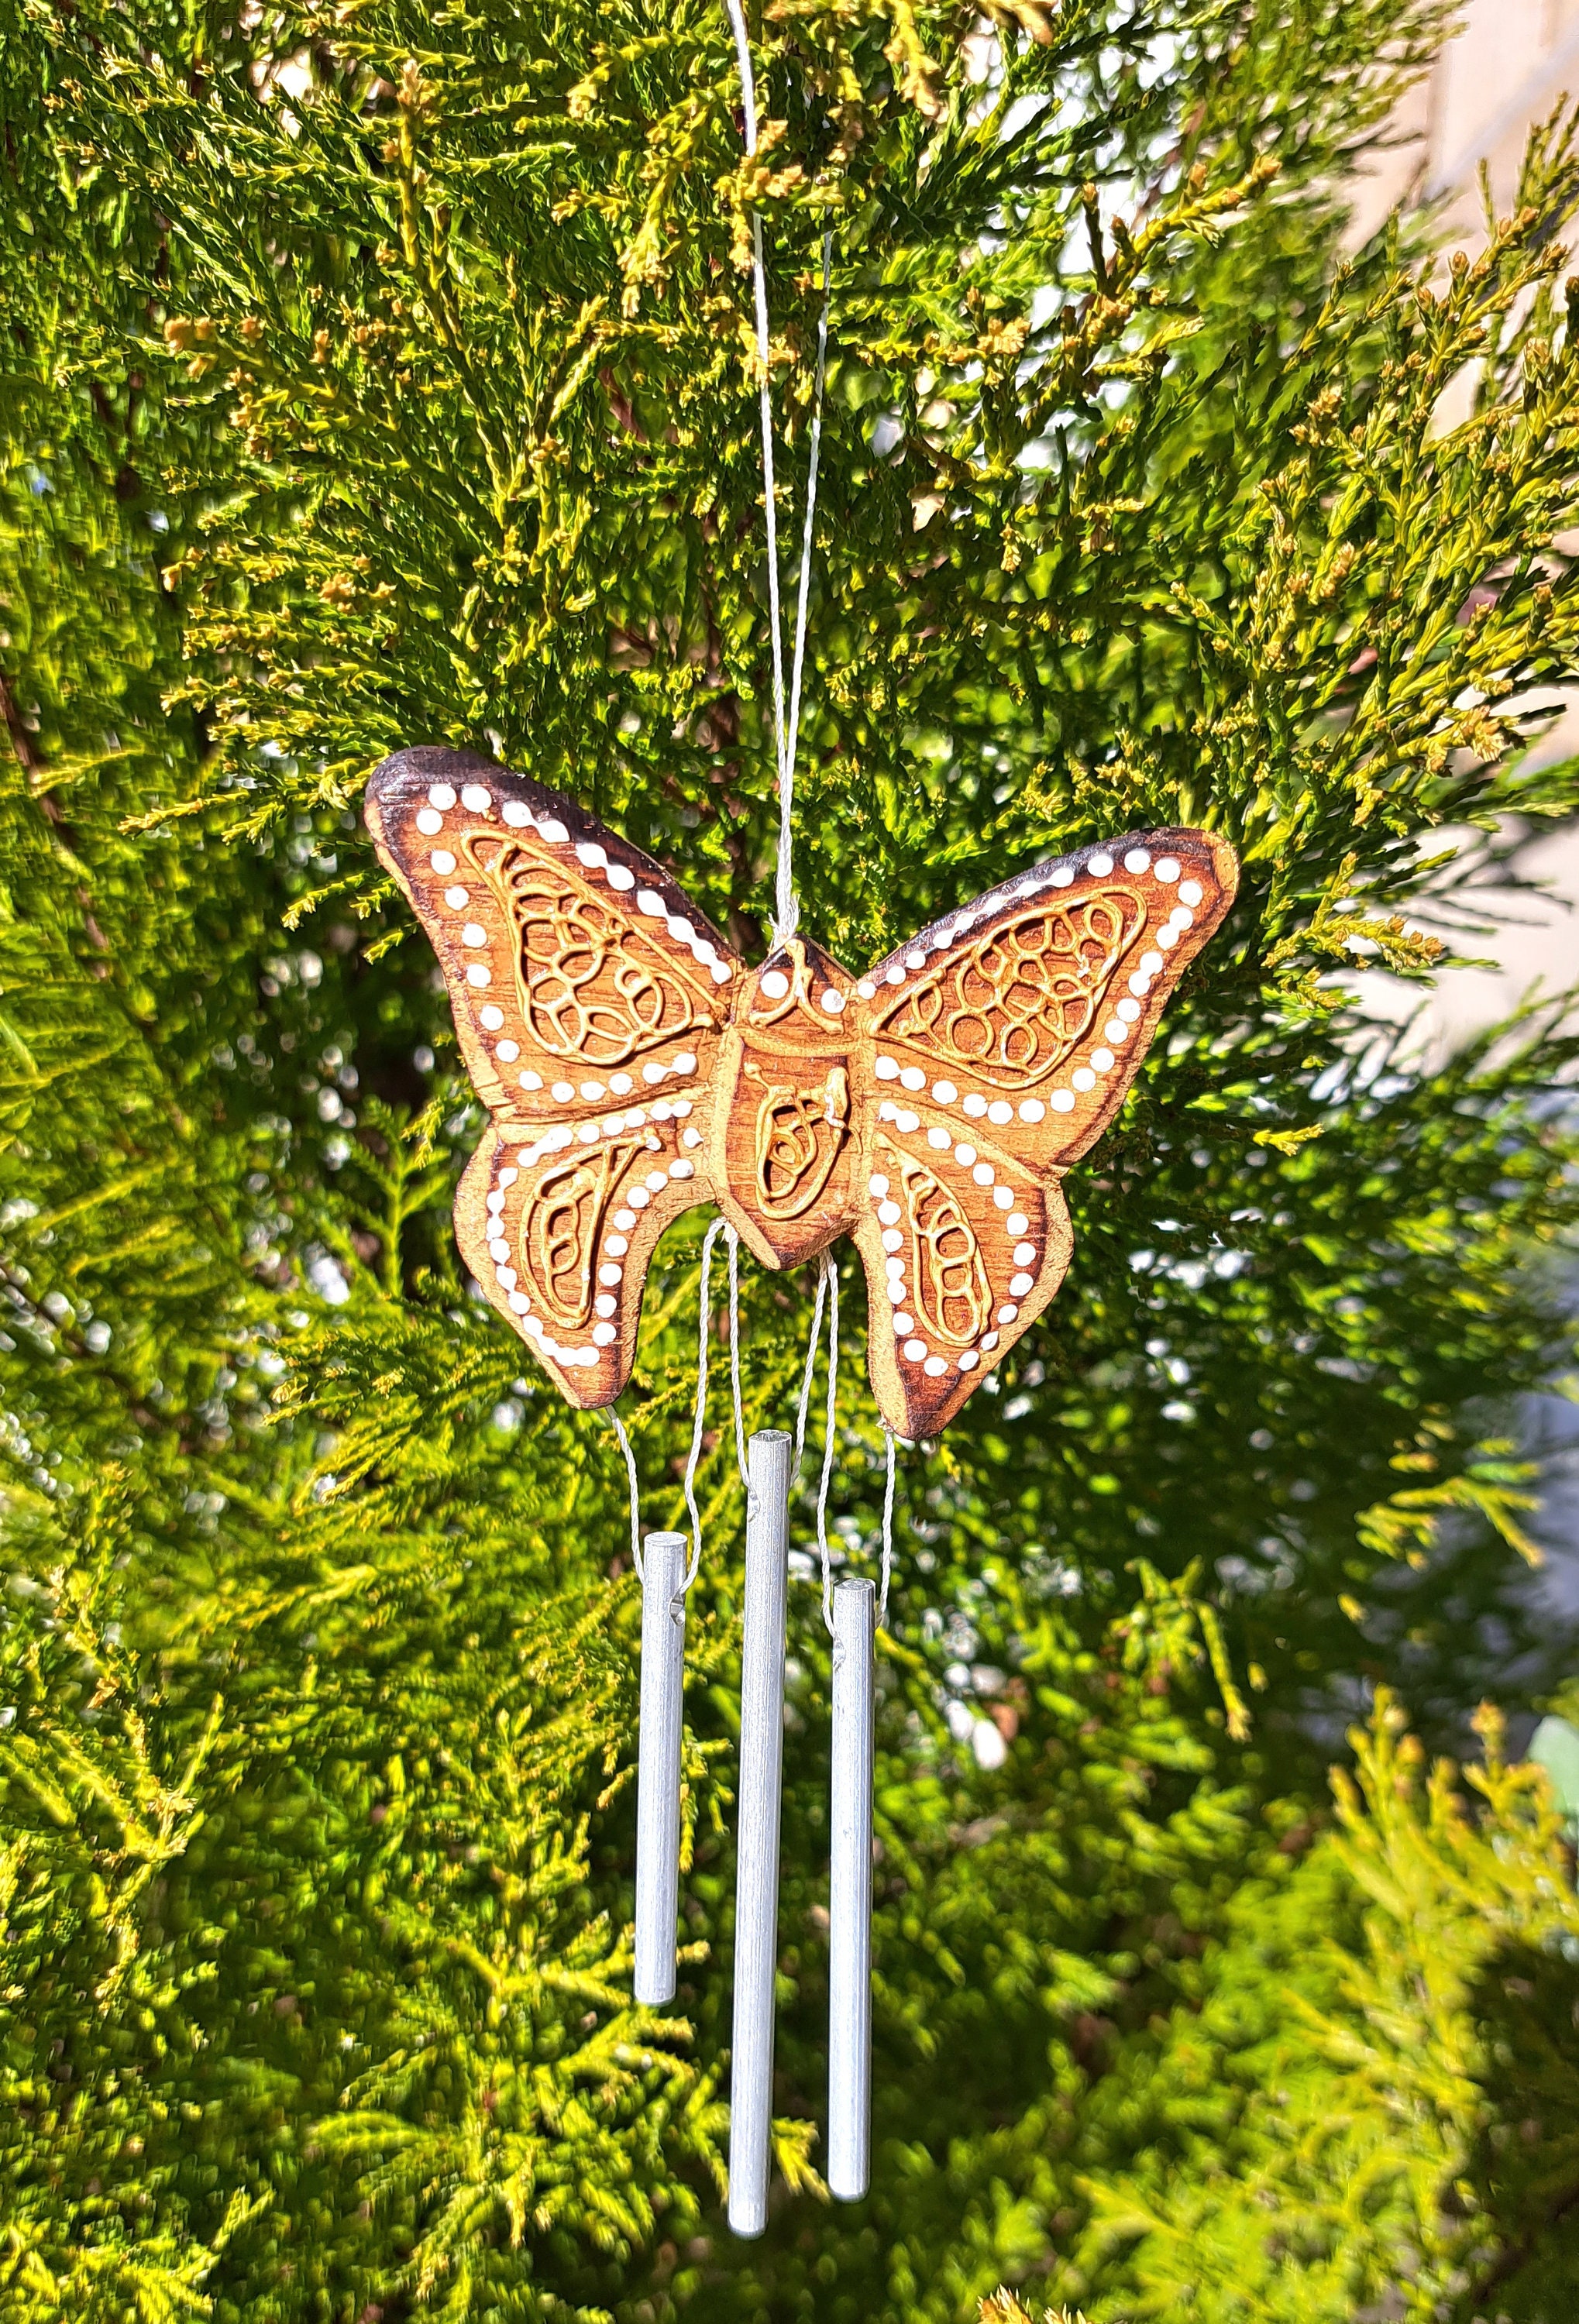 Les produits   Décoration du jardin - Carillon papillon bronze